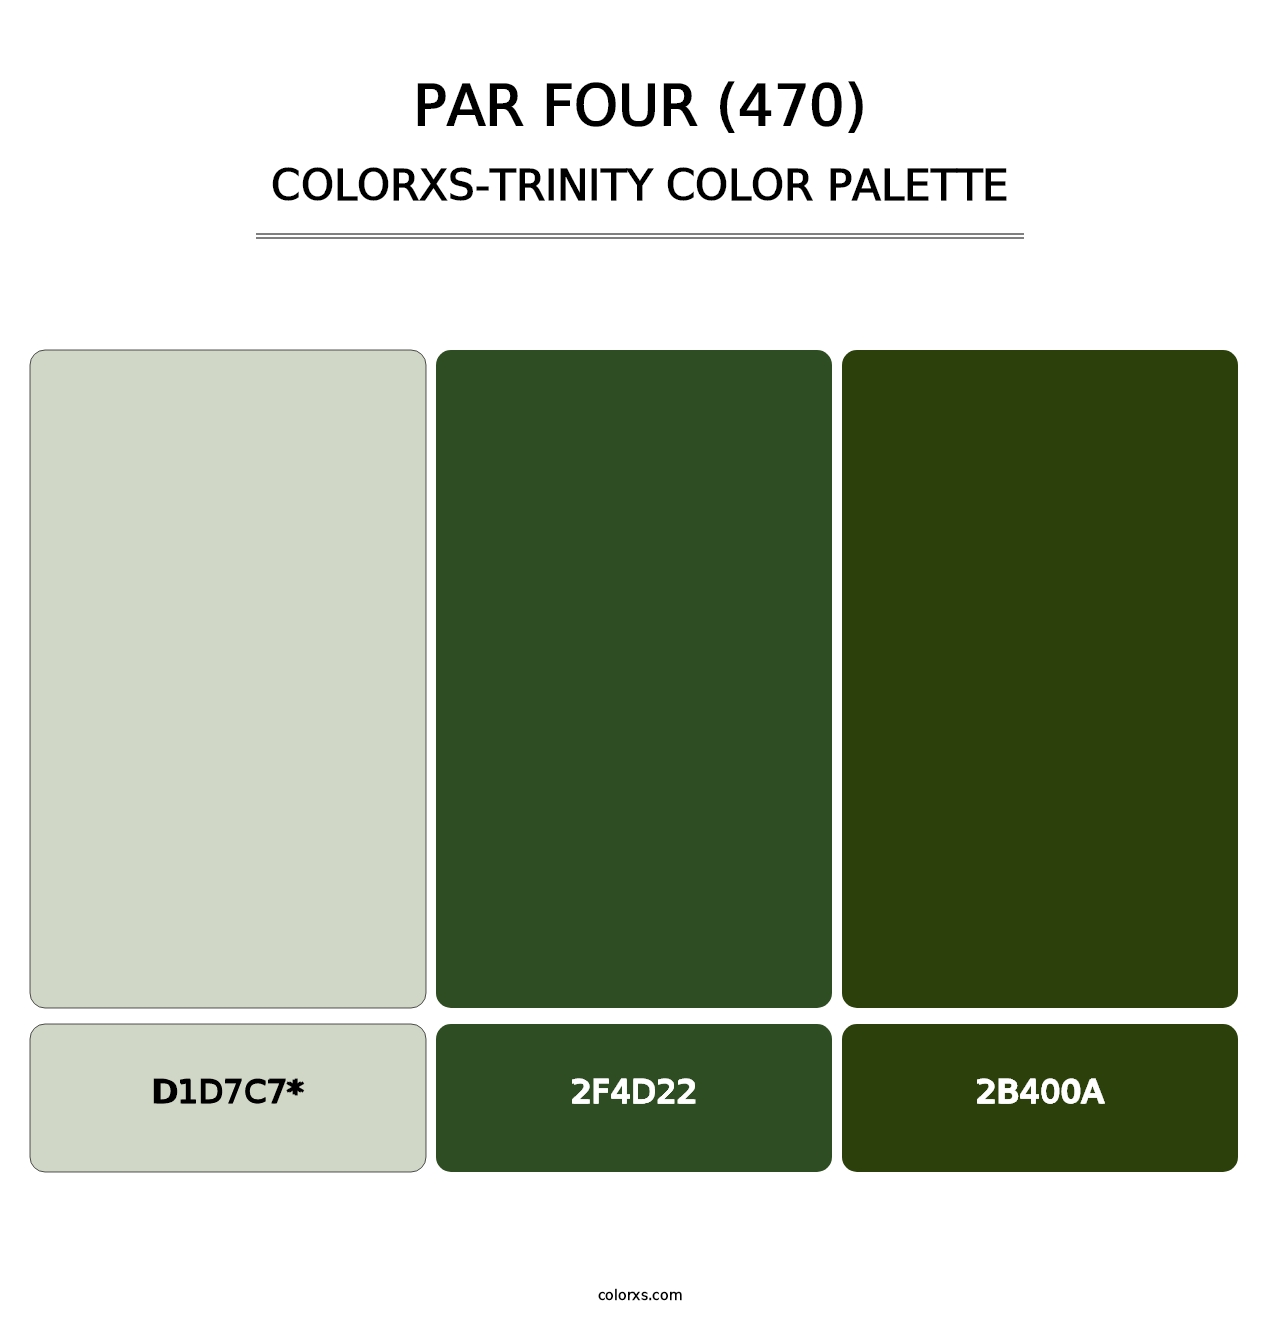 Par Four (470) - Colorxs Trinity Palette